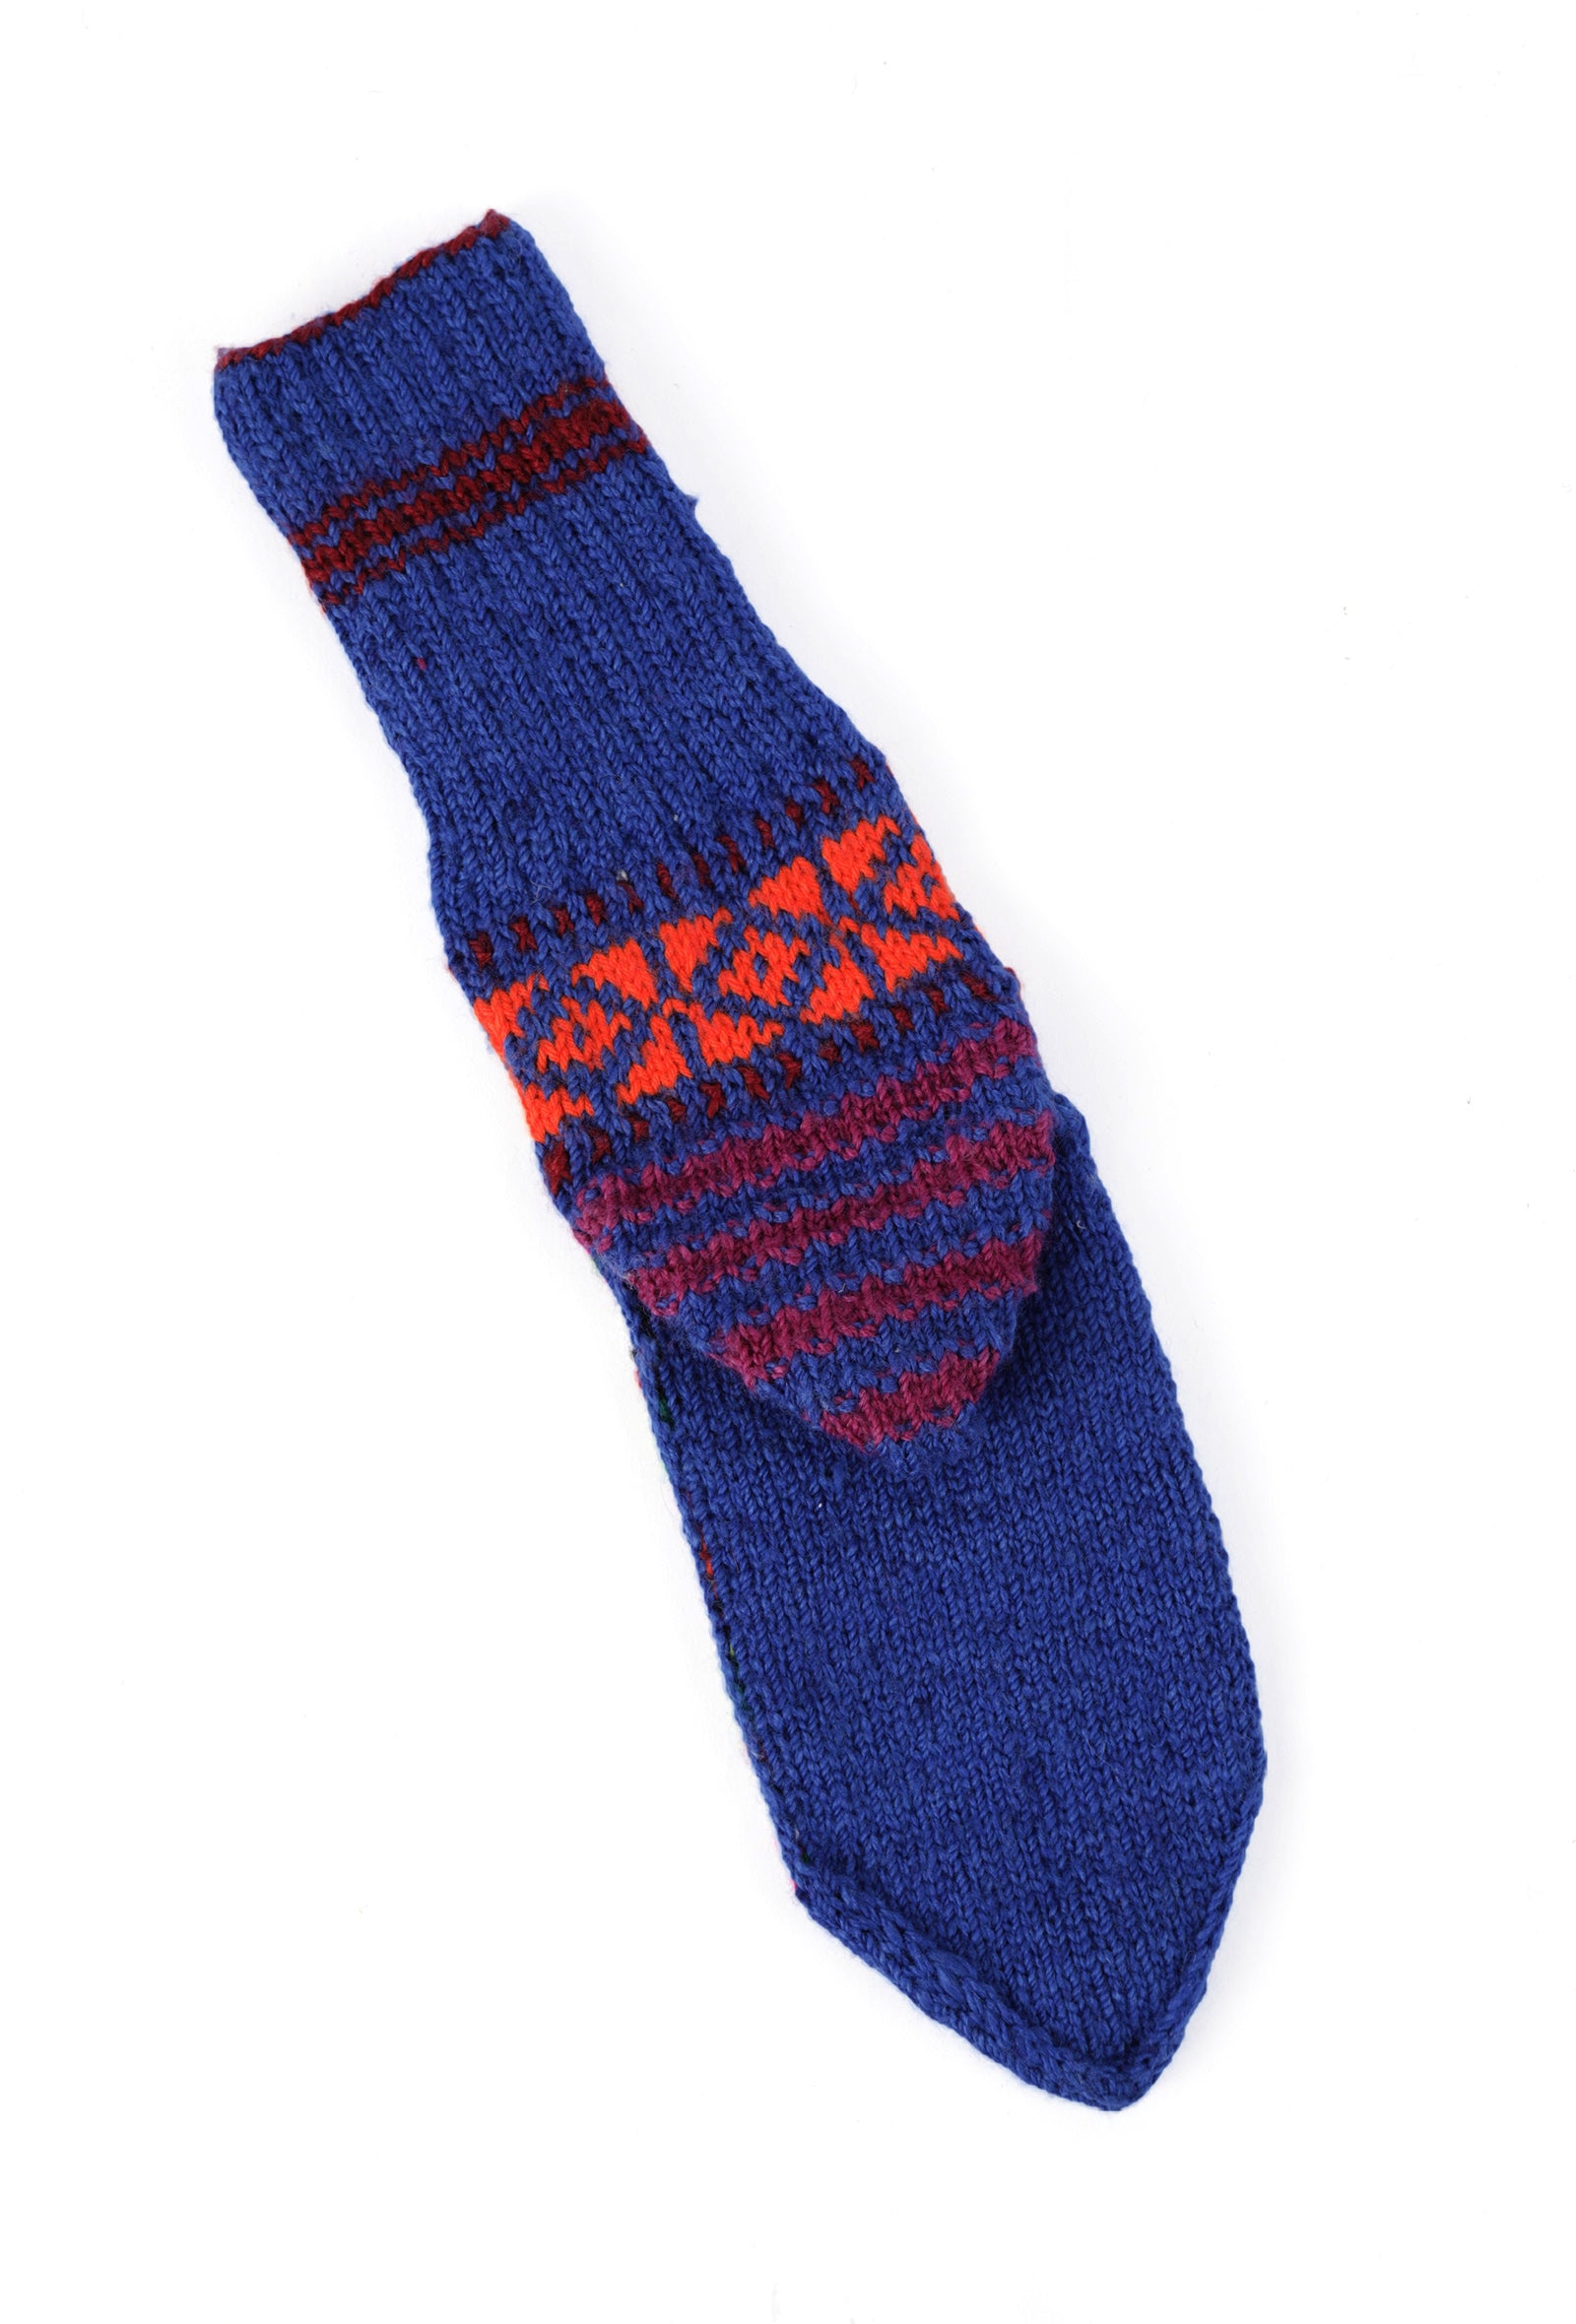 Azure Blue & Multi Hand Knitted Woolen Winter Socks